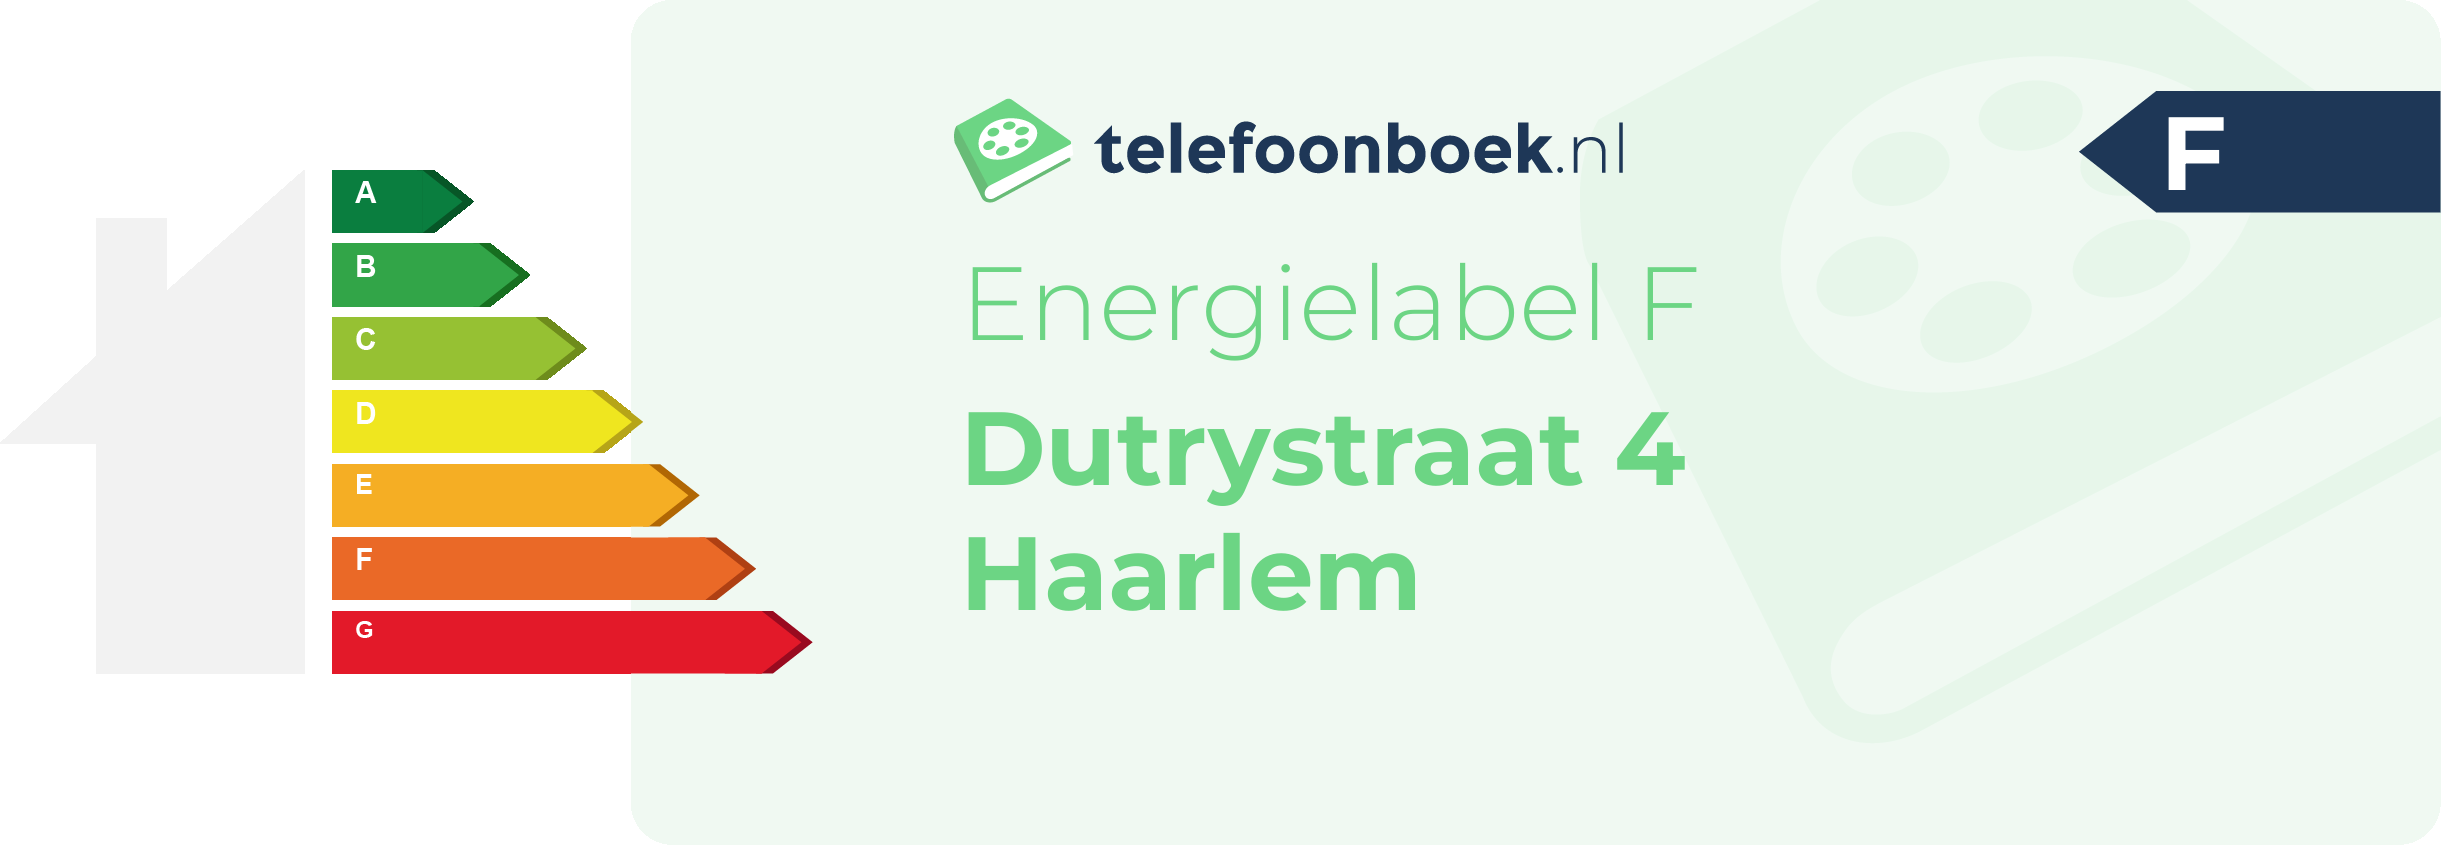 Energielabel Dutrystraat 4 Haarlem